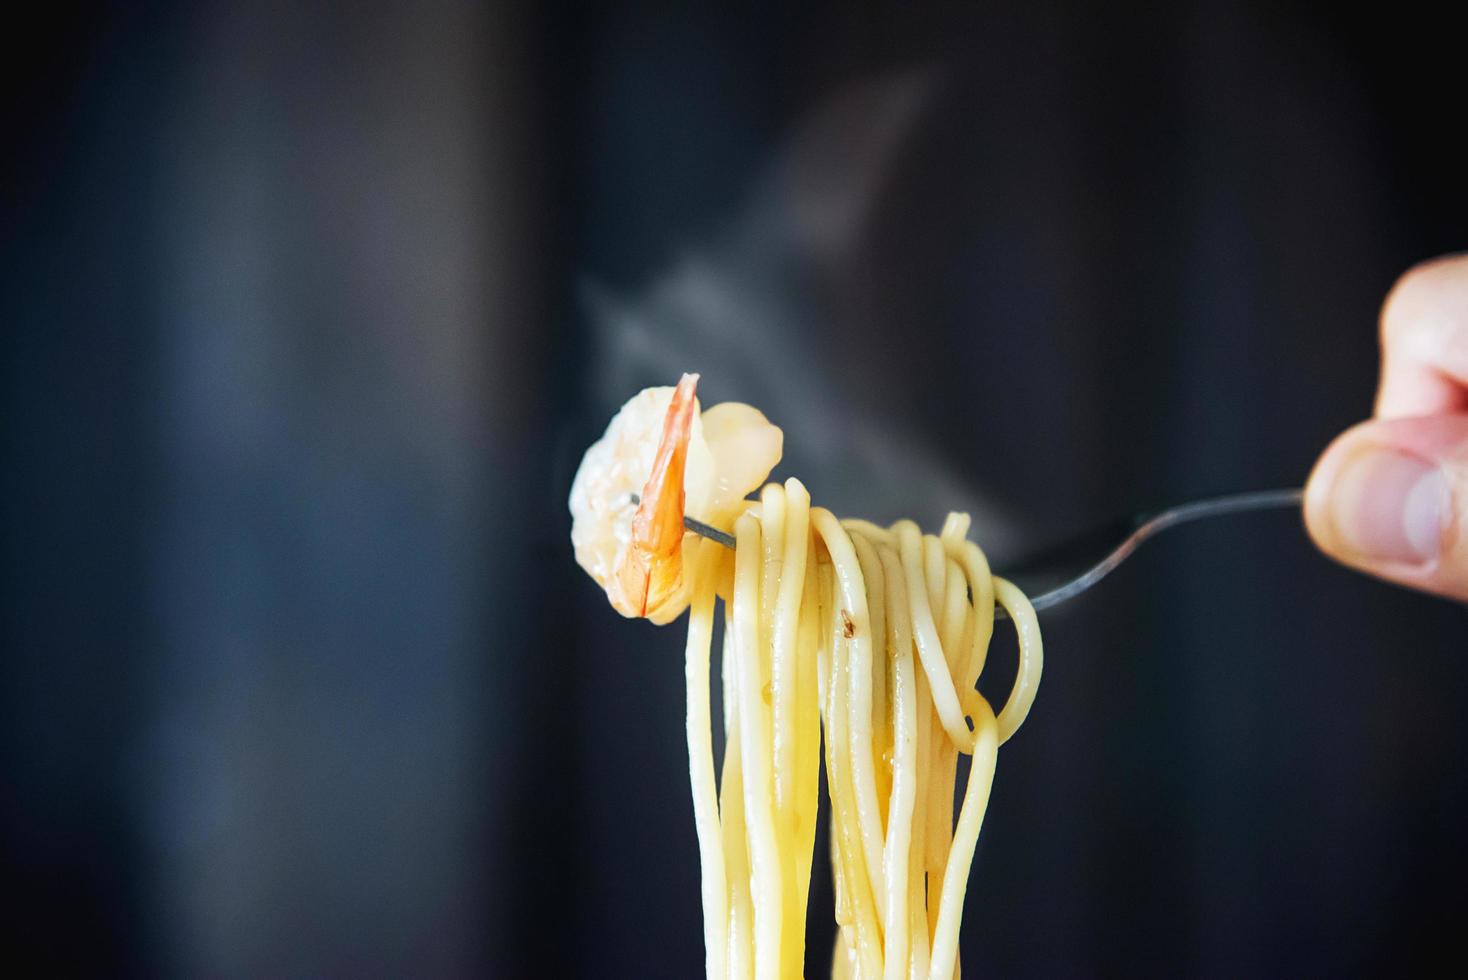 spaghettis chauds et épicés aux crevettes et à la fourchette sur fond noir - cuisine italienne avec concept de personnes photo